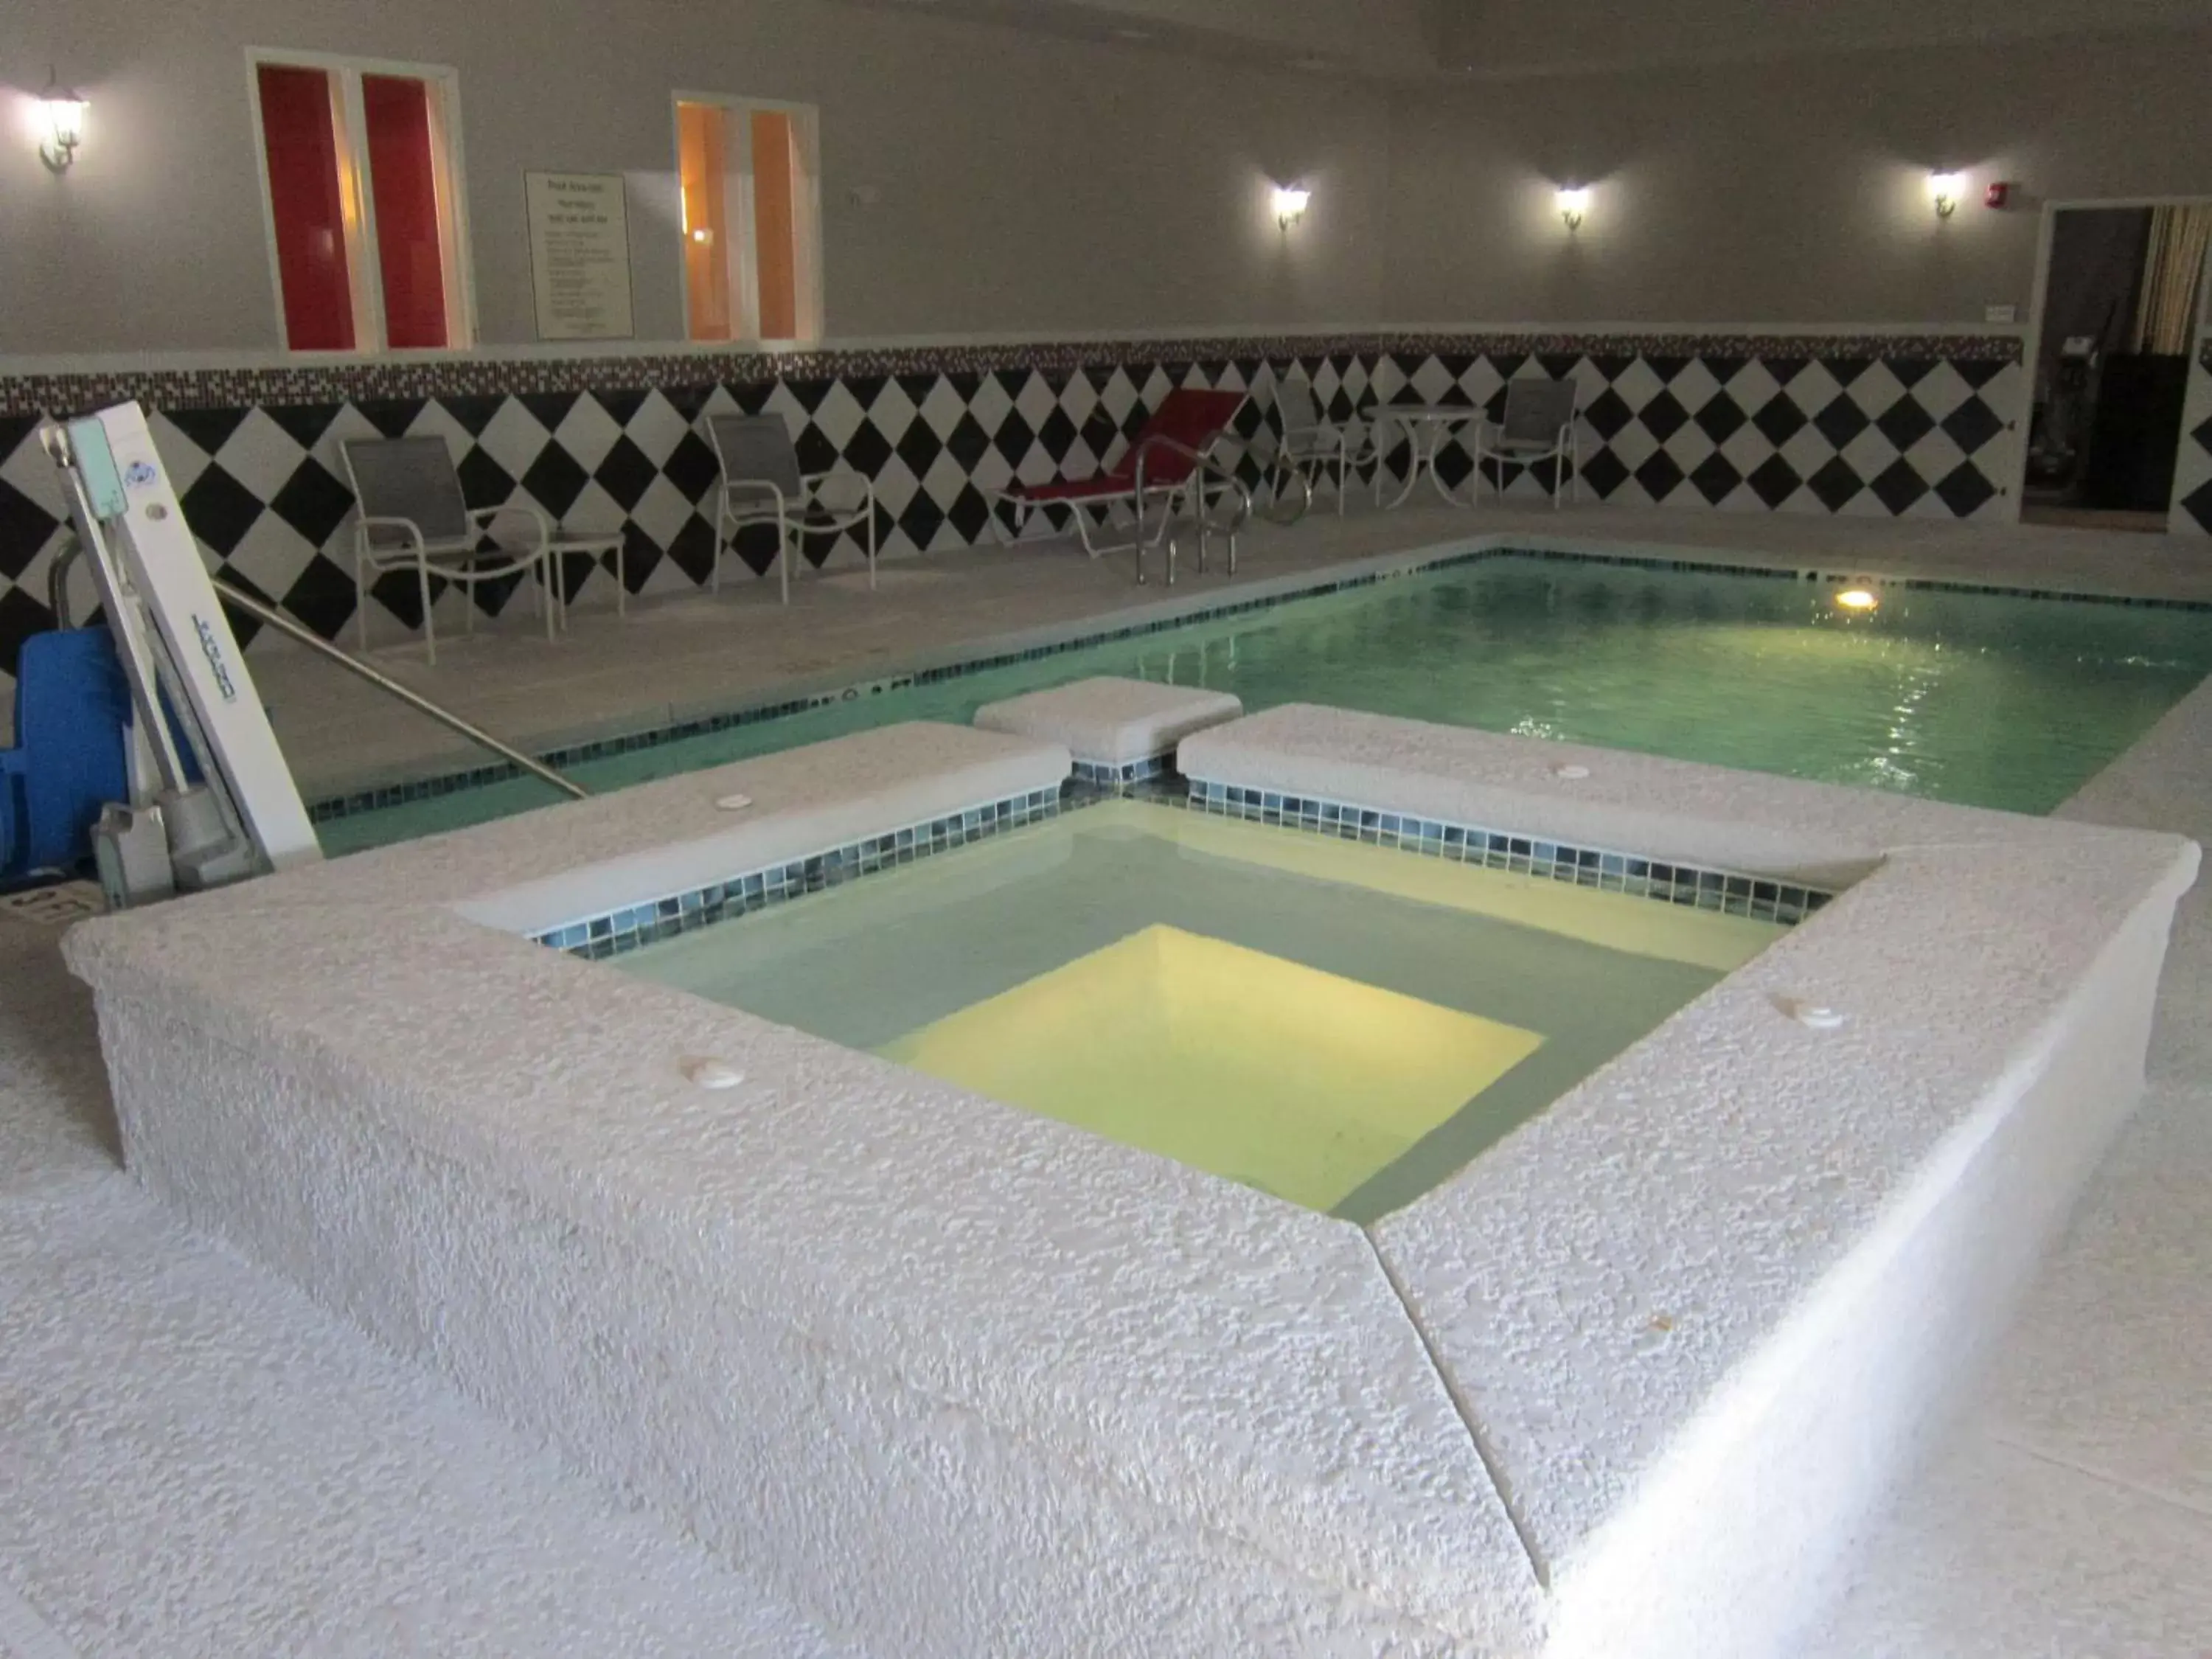 On site, Swimming Pool in Best Western Plus Laredo Inn & Suites